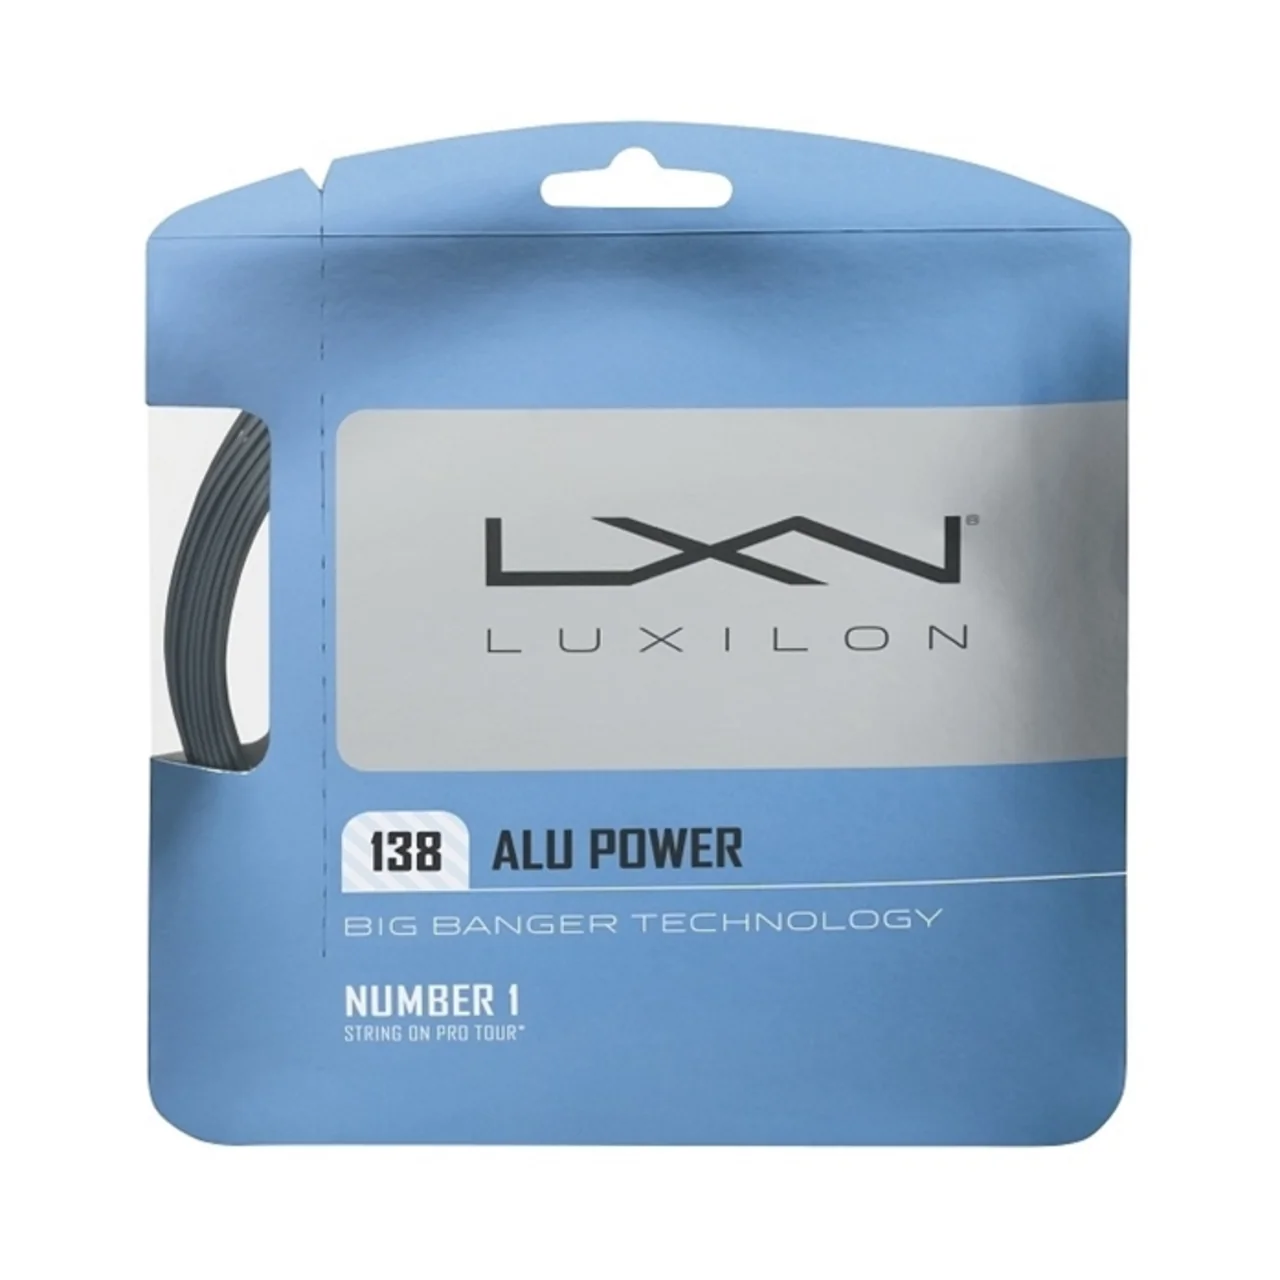 Luxilon Alu Power 138